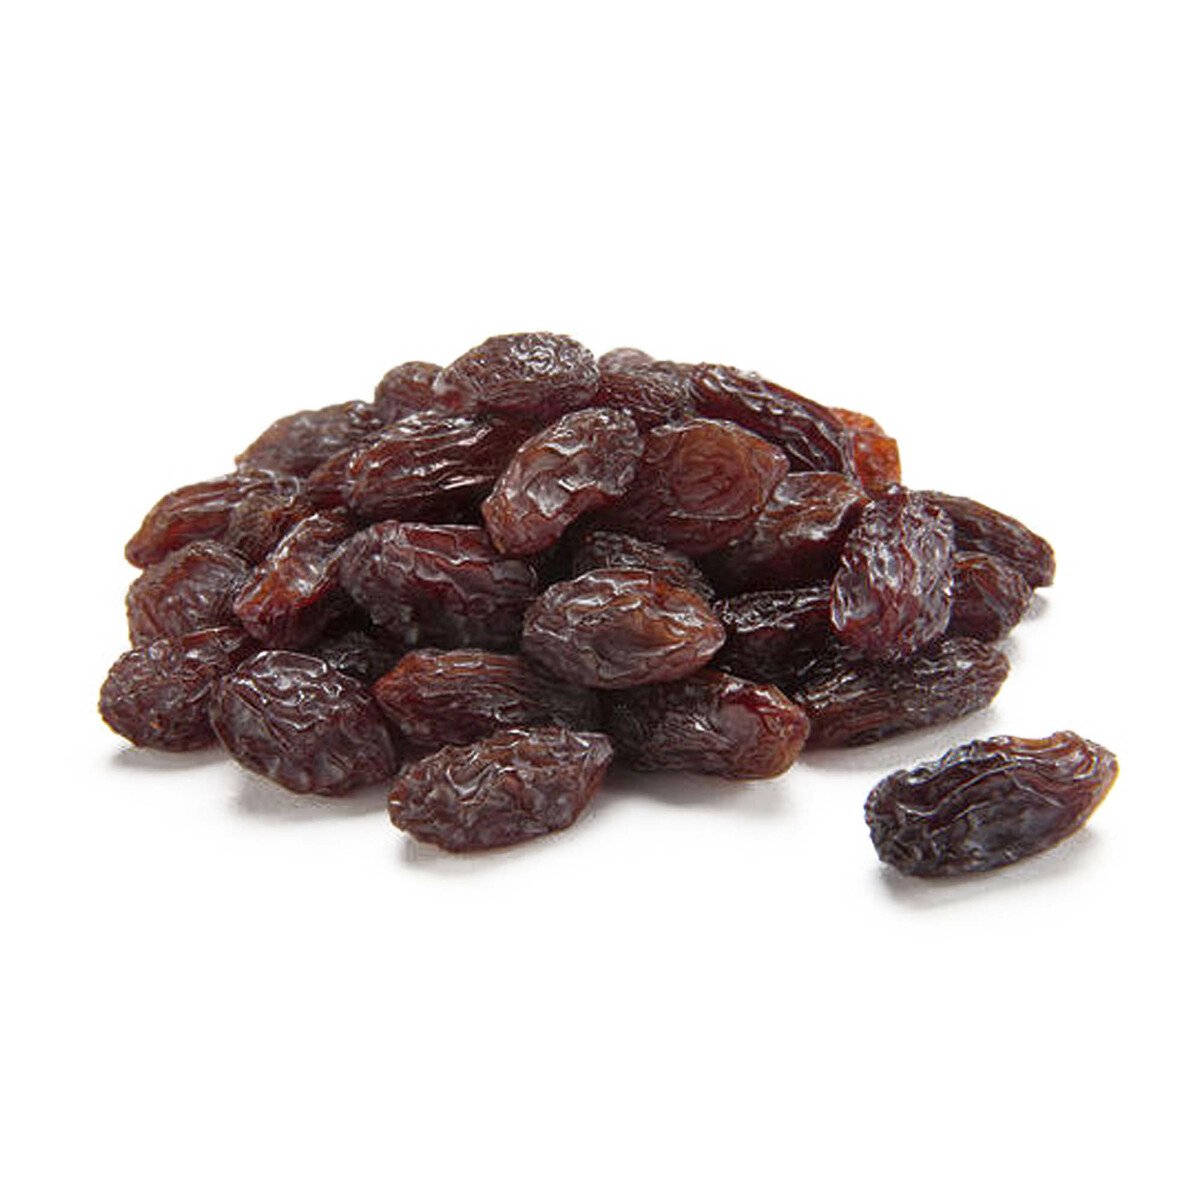 Buy Brown Raisins 500g Online at Best Price | Roastery Dried Fruit | Lulu KSA in Saudi Arabia